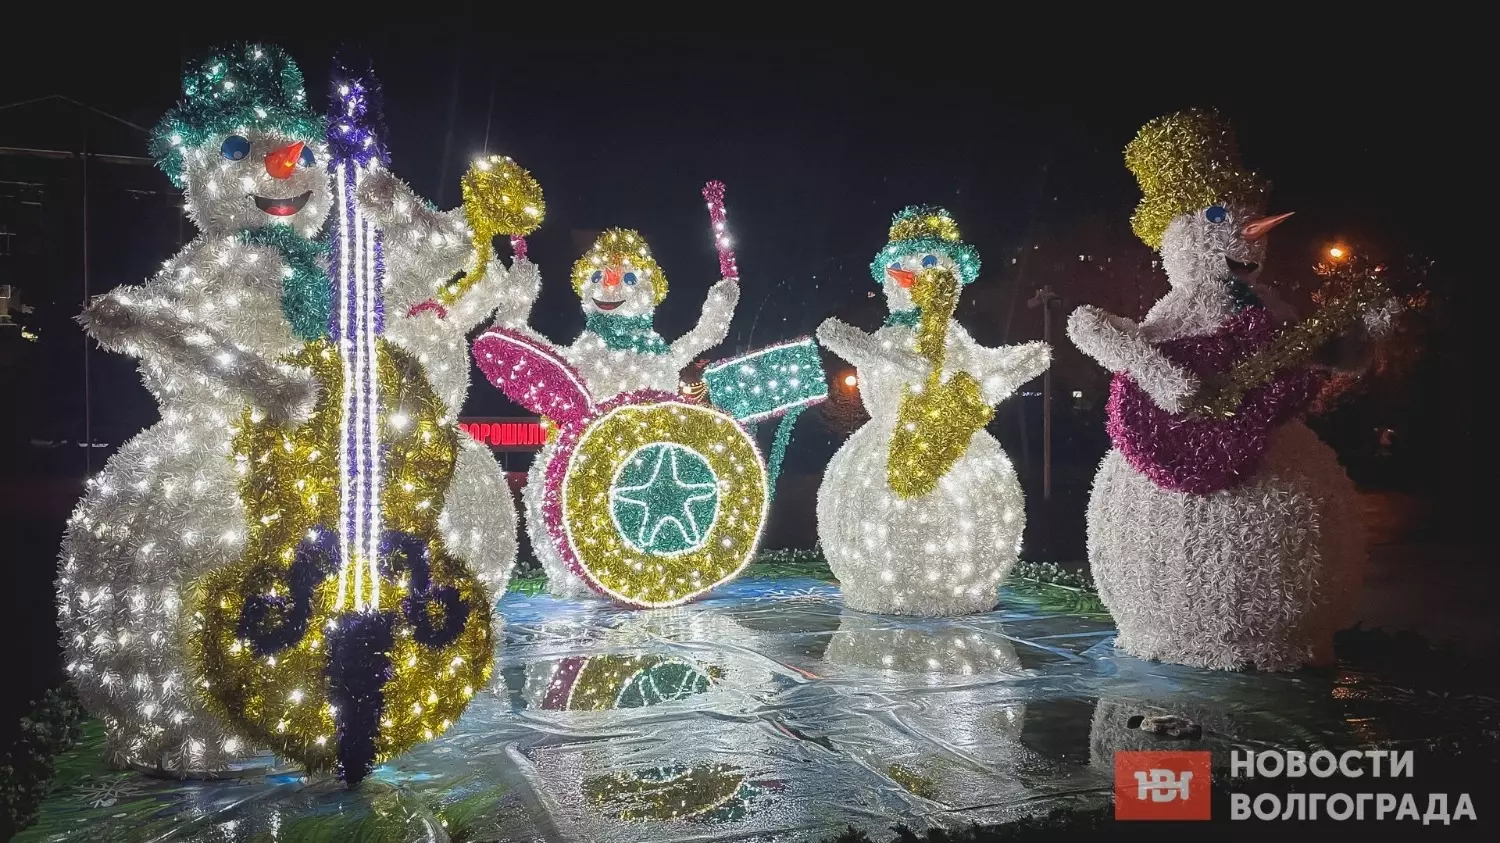 Светодиодные объекты создают новогоднее настроение задолго до праздника